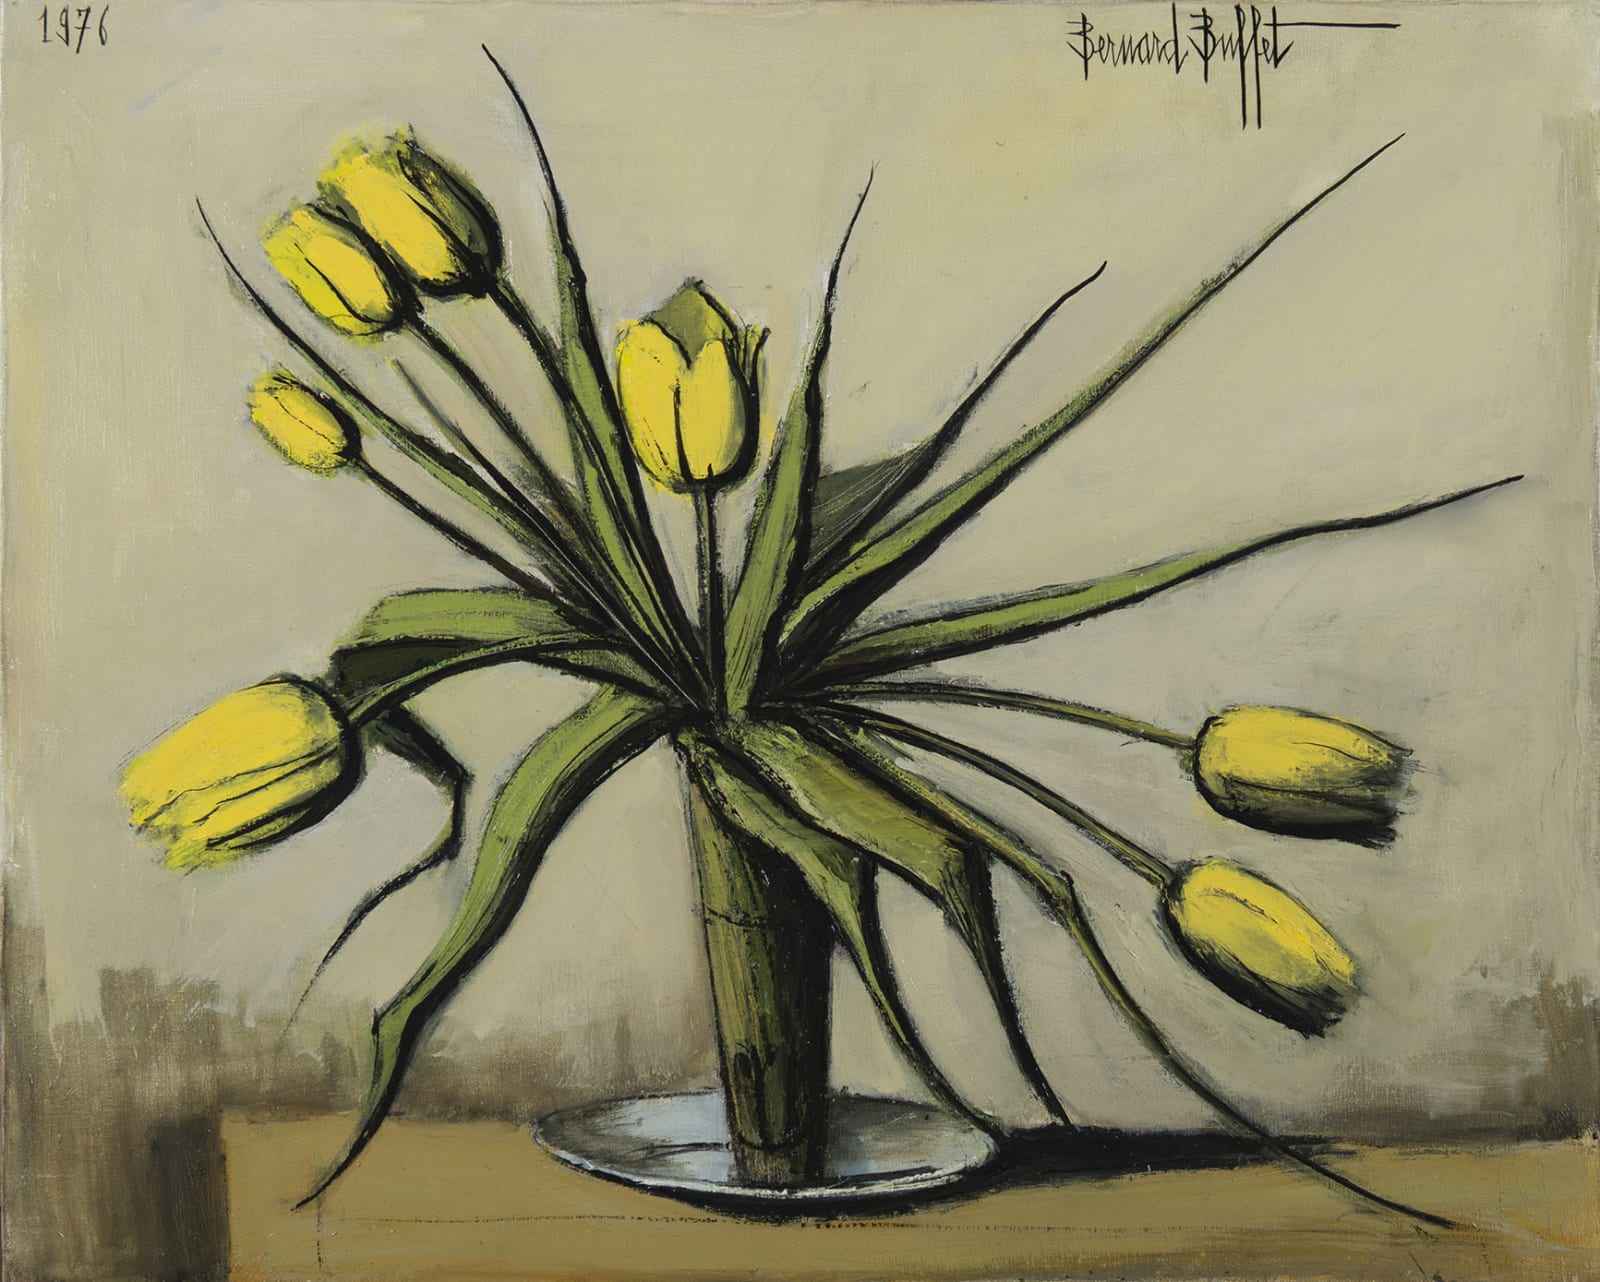 BERNARD BUFFET, Les tulipes jaunes, 1976